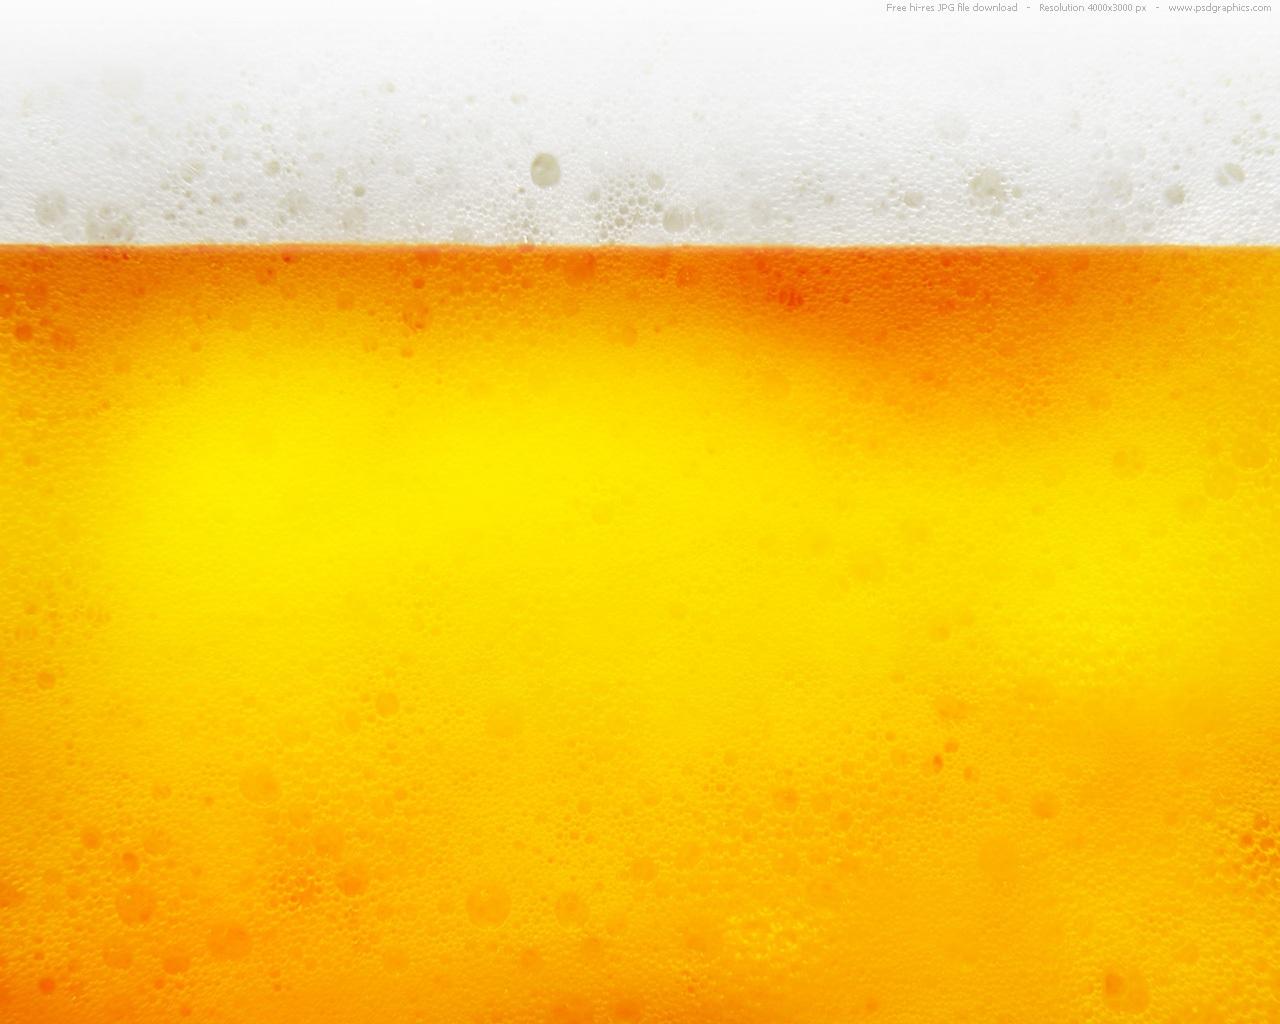 Yellow Beer Texture Wallpaper Jpg